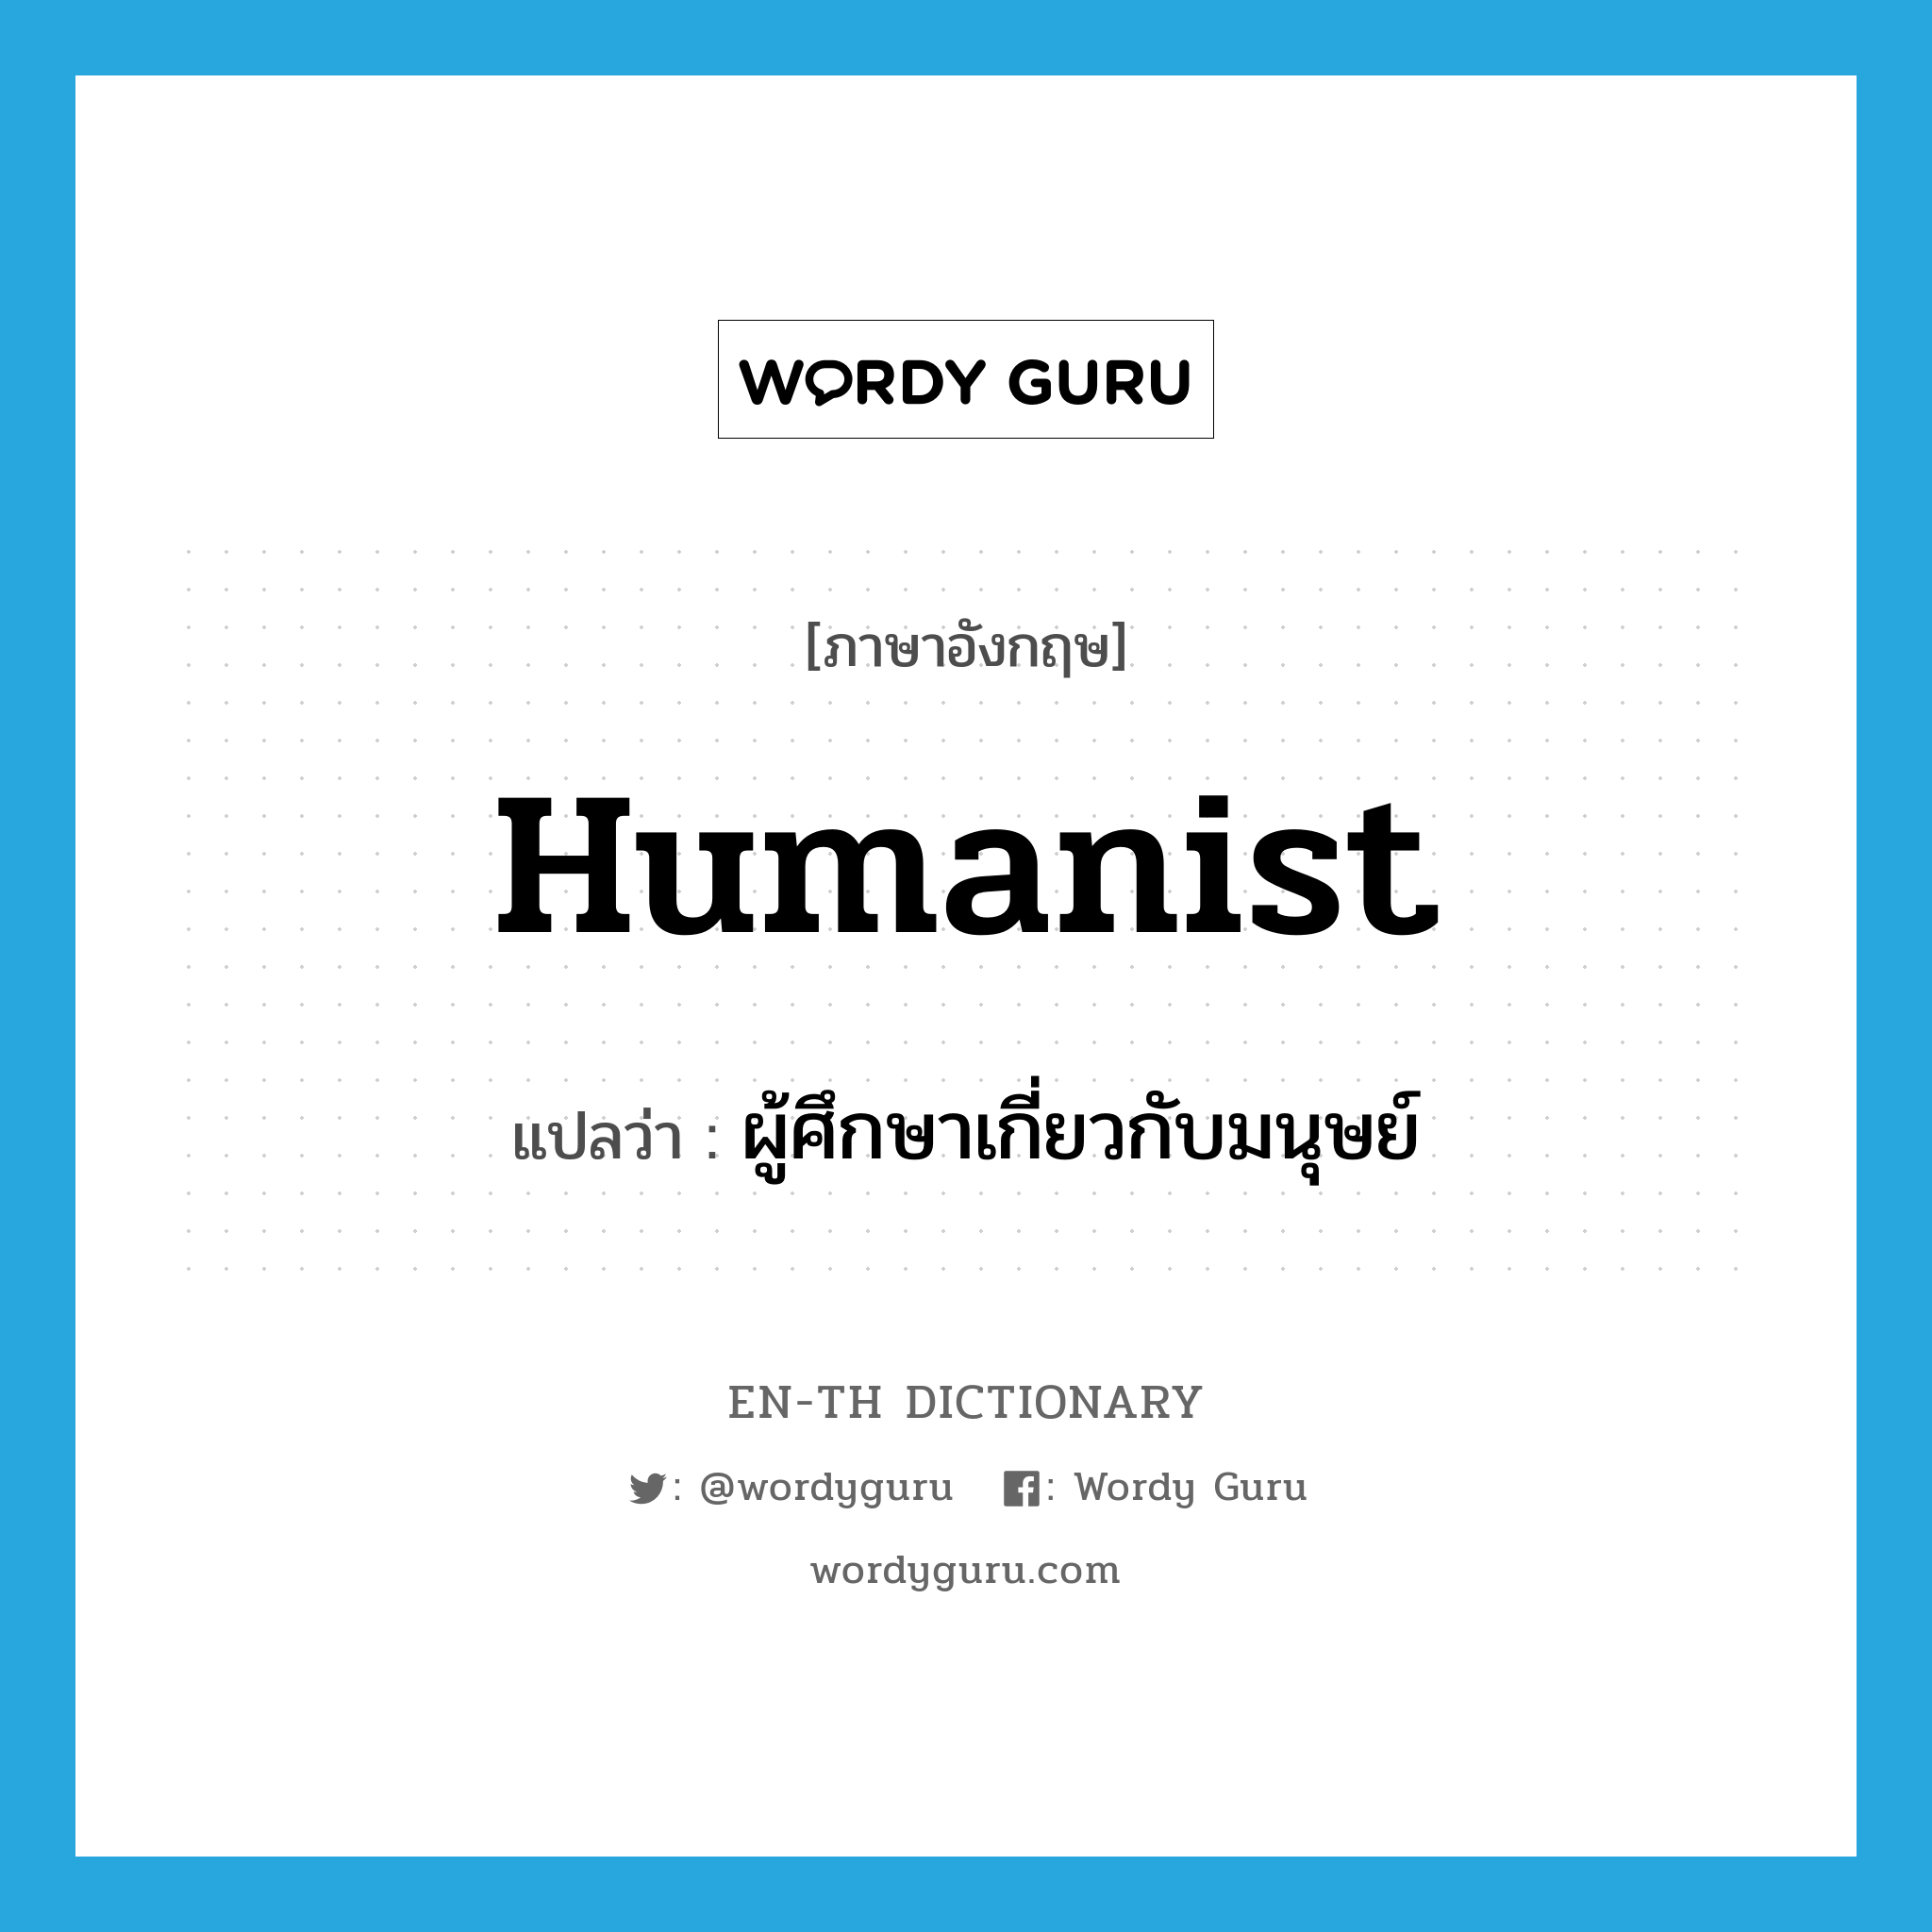 ผู้ศึกษาเกี่ยวกับมนุษย์ ภาษาอังกฤษ?, คำศัพท์ภาษาอังกฤษ ผู้ศึกษาเกี่ยวกับมนุษย์ แปลว่า humanist ประเภท N หมวด N